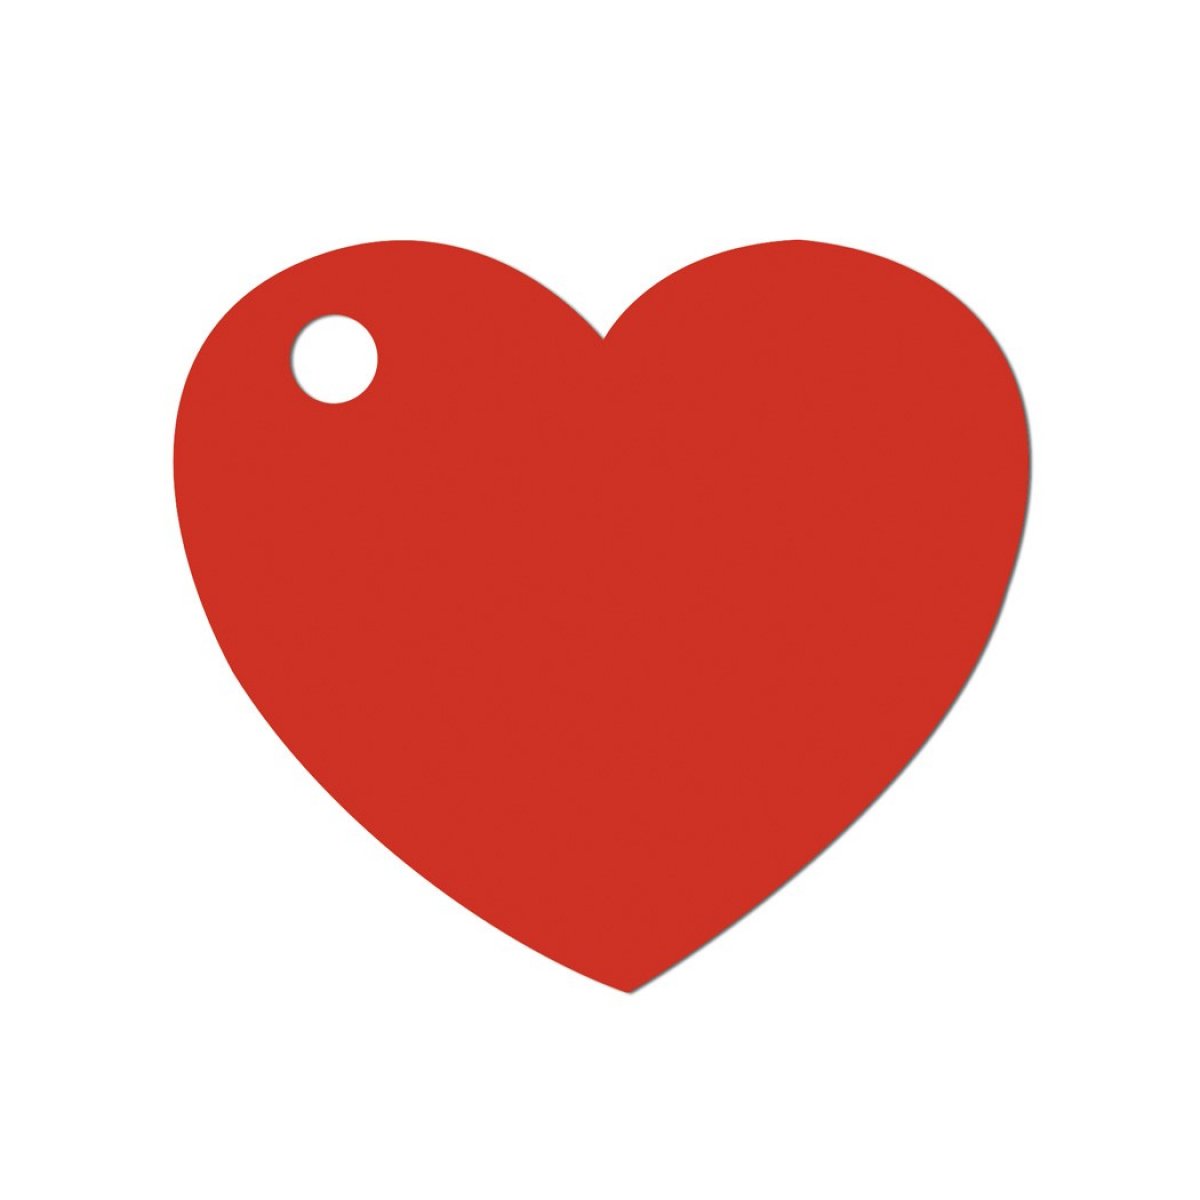 Etiquette marque place - Coeur rouge x 50 pièces